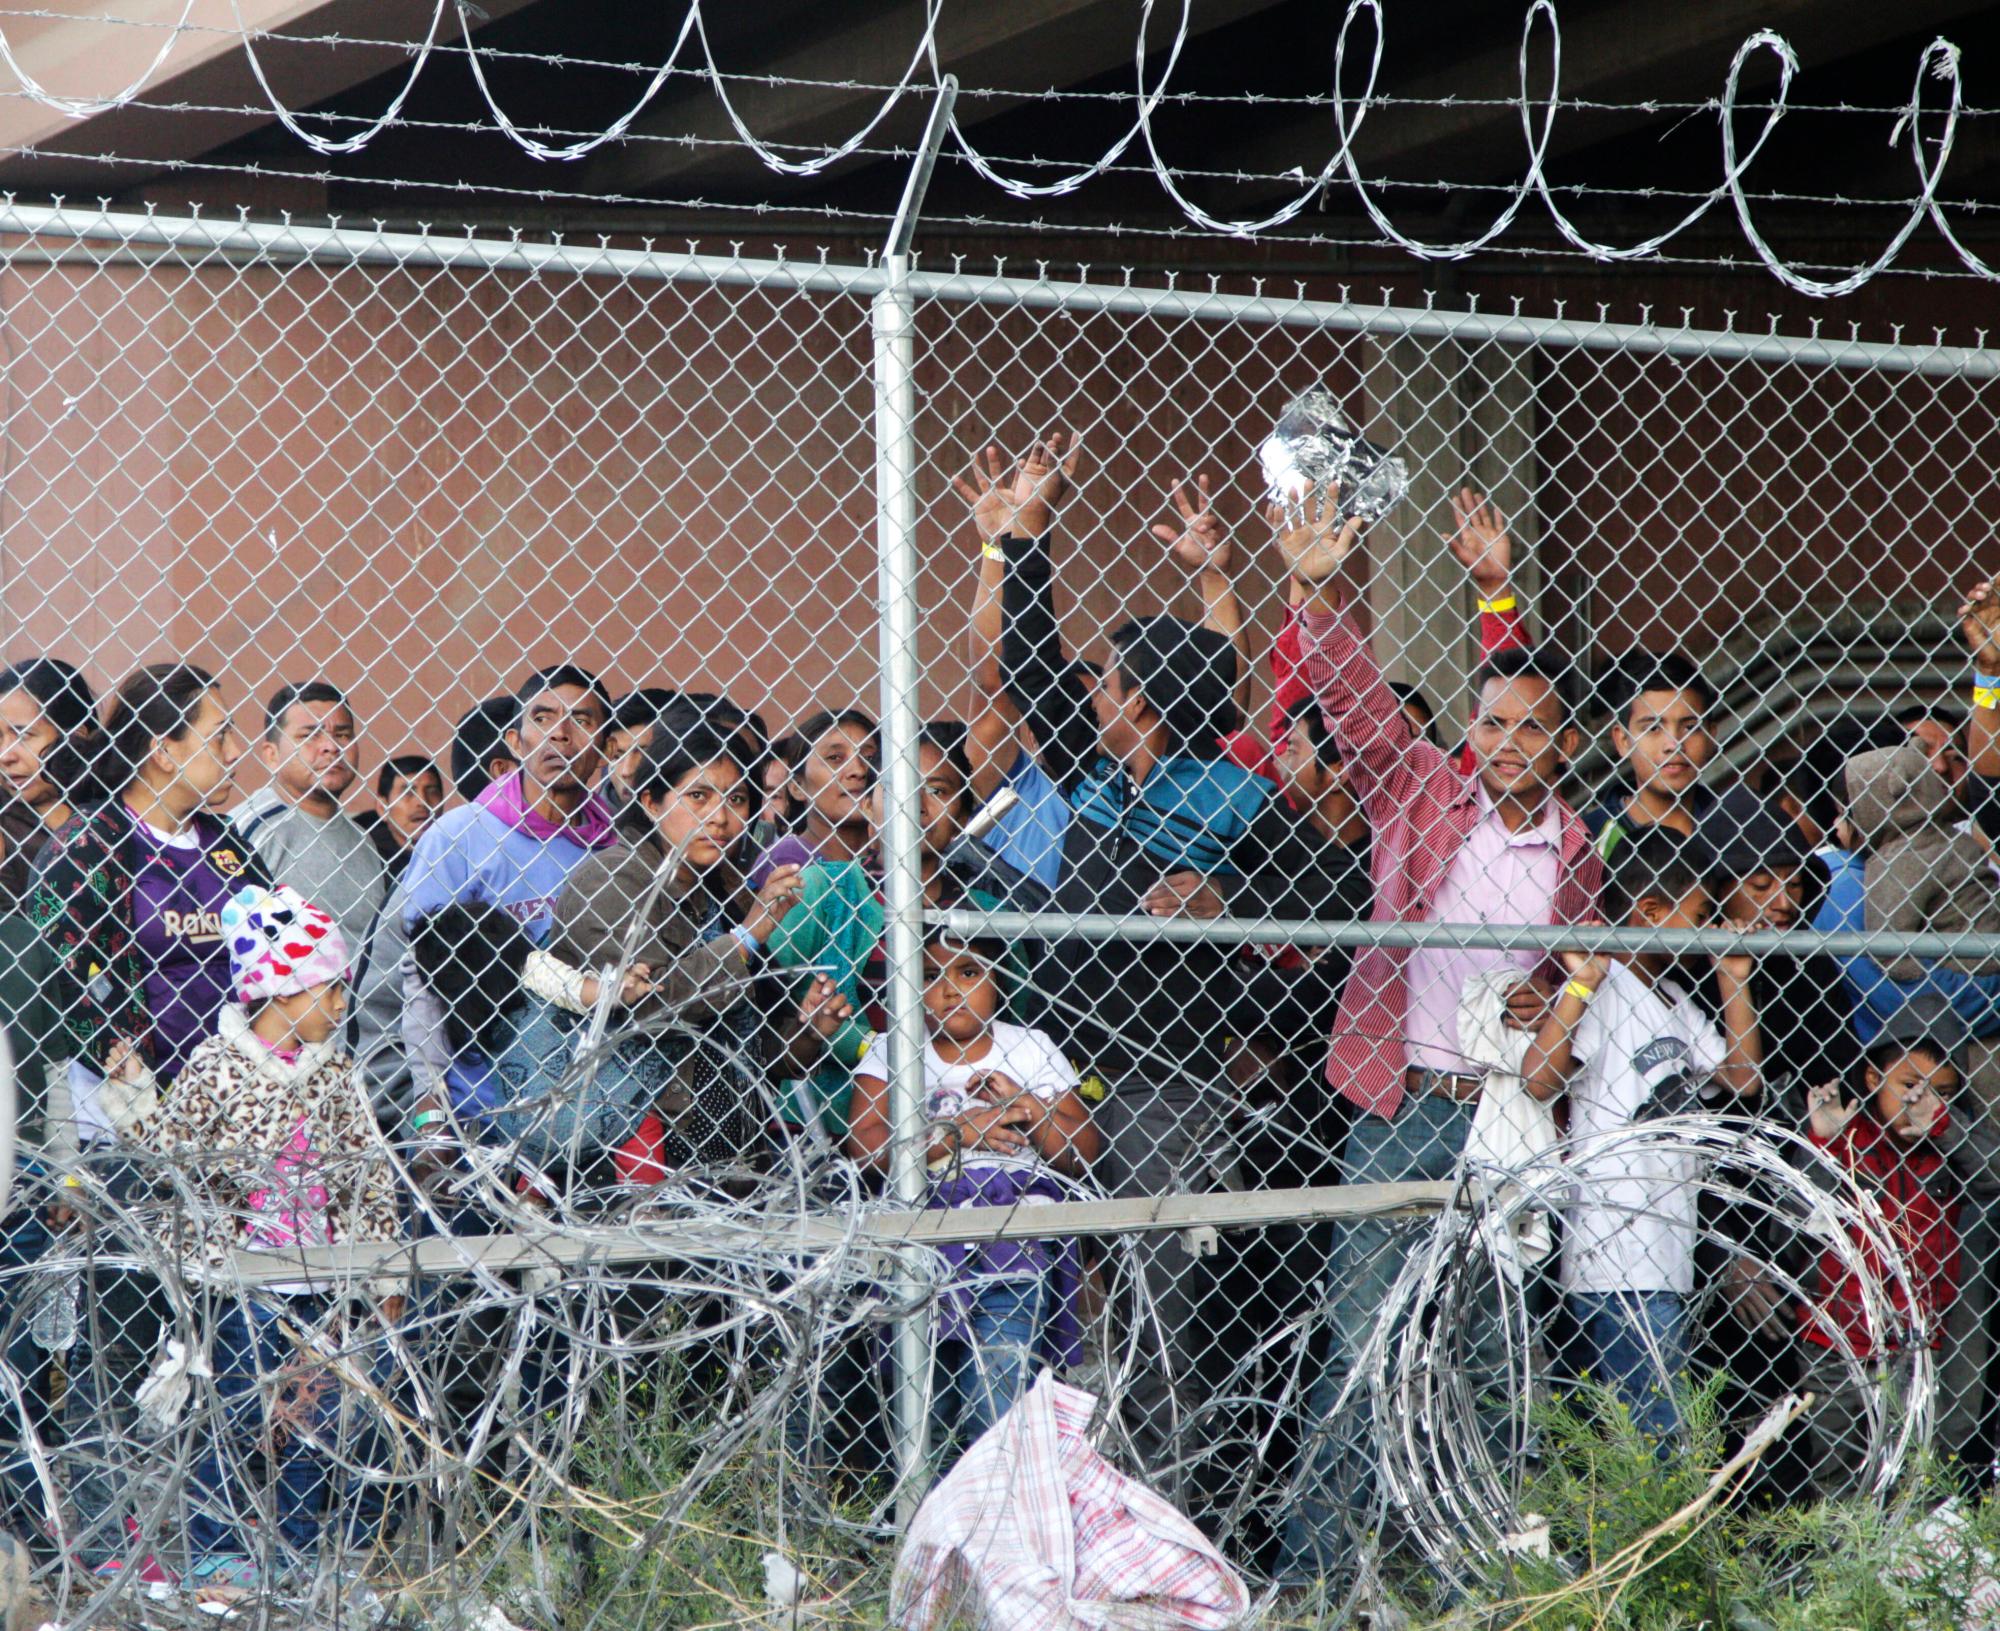  Los migrantes centroamericanos esperan comida en un albergue construido por la Oficina de Aduanas y Protección Fronteriza de los Estados Unidos para procesar un aumento de familias migrantes y menores no acompañados en El Paso, Texas.